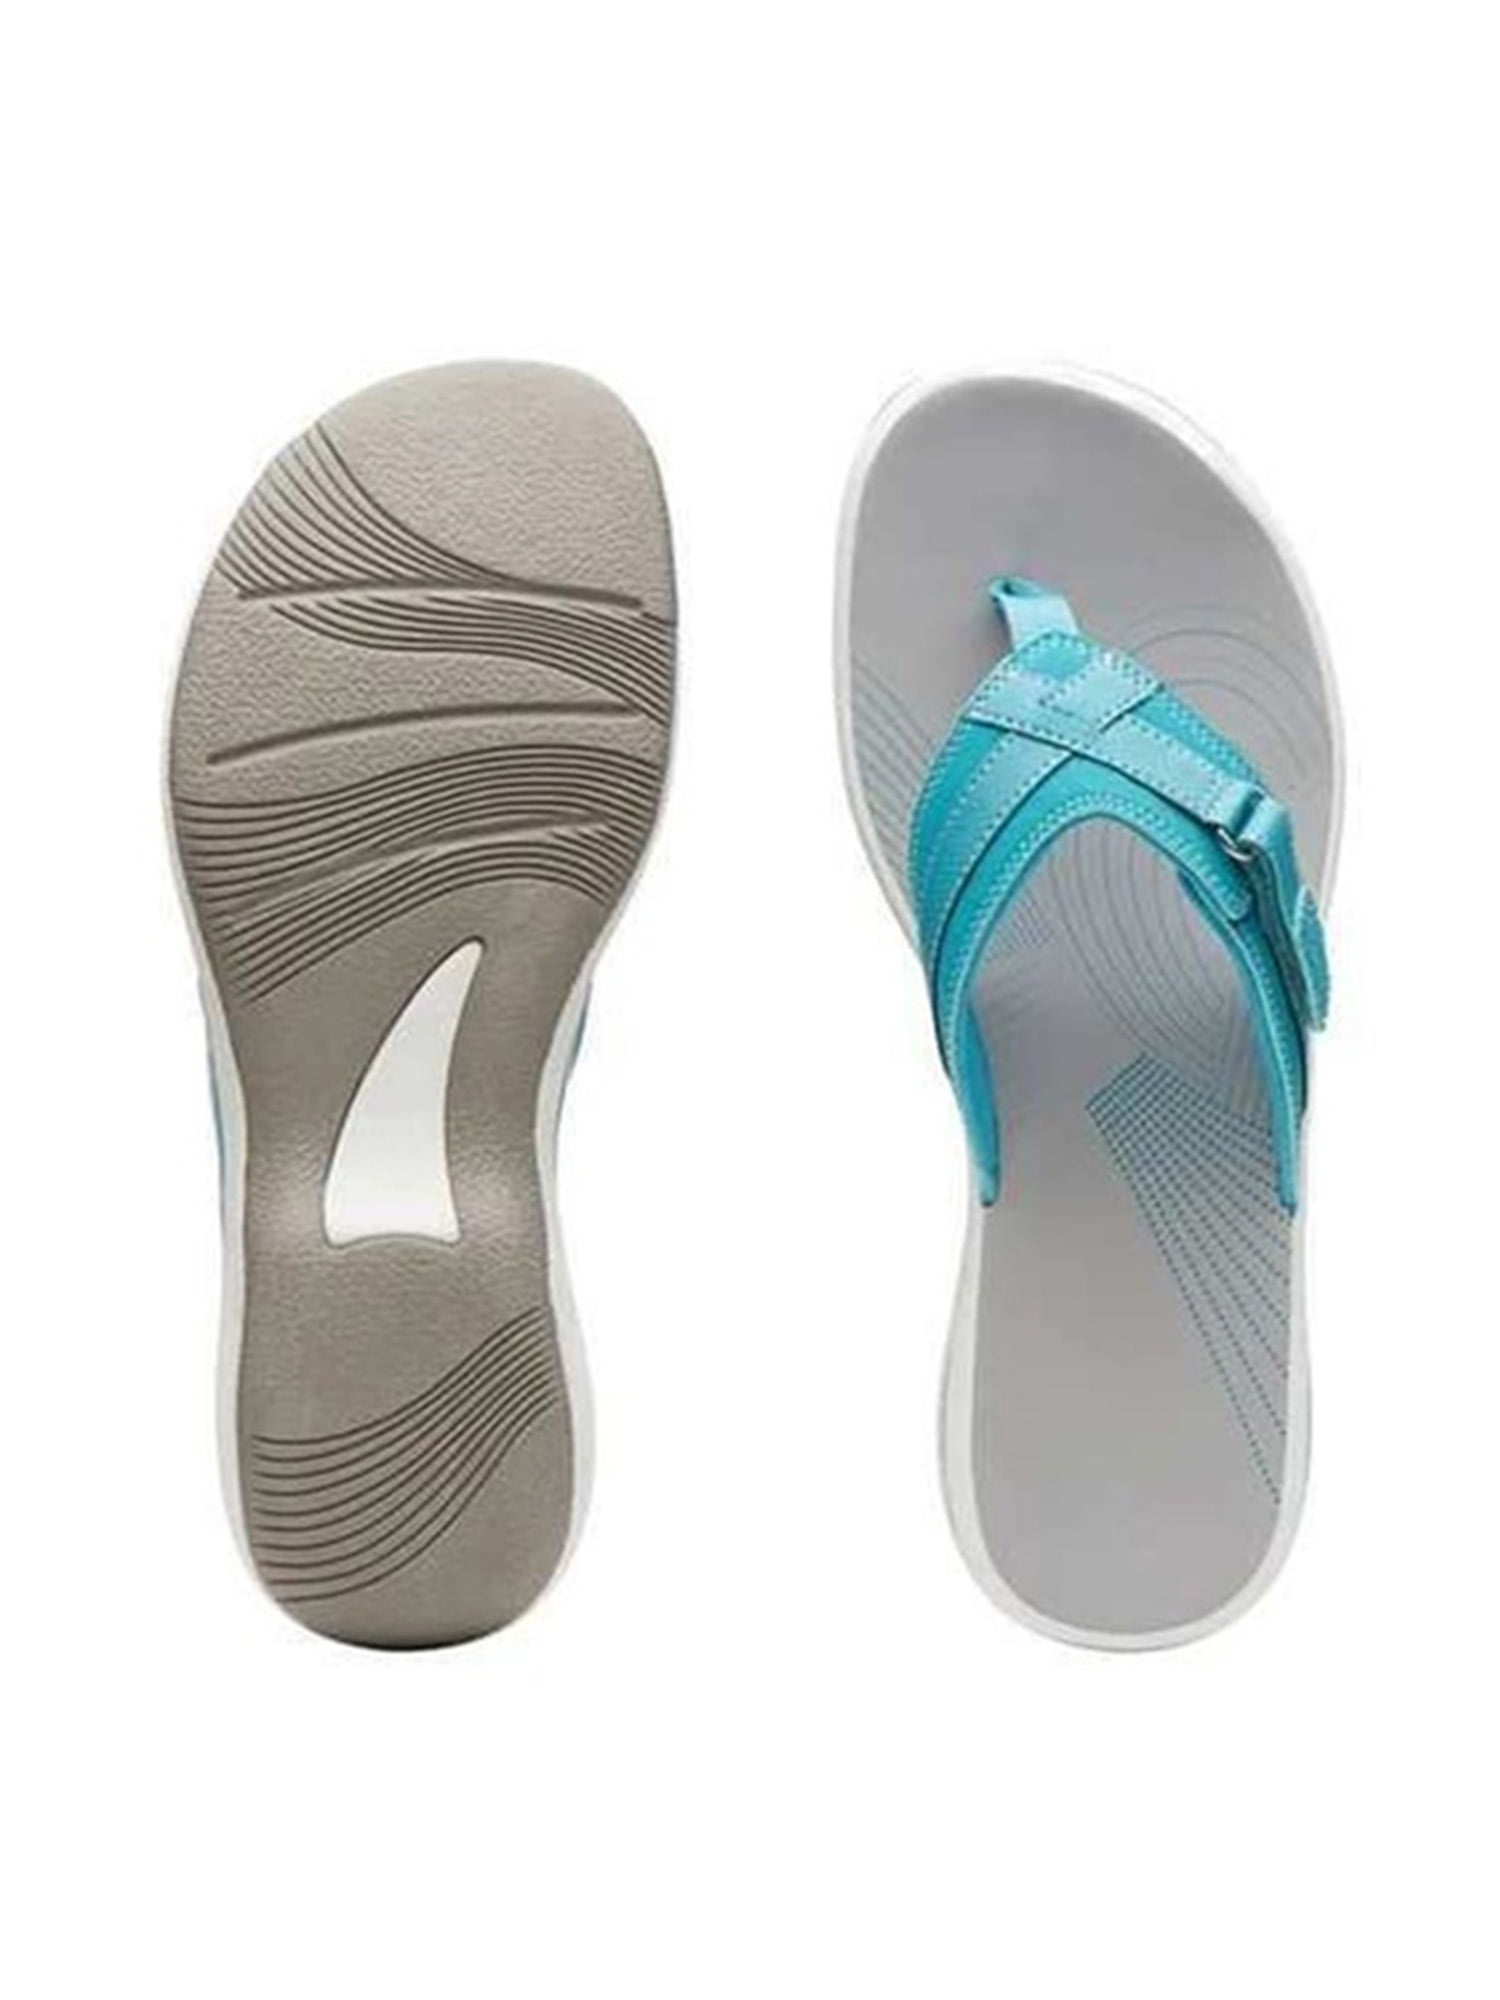 NEW Womens Summer Comfort Casual Thong Flat Flip Flops Sandals Slipper shoes 